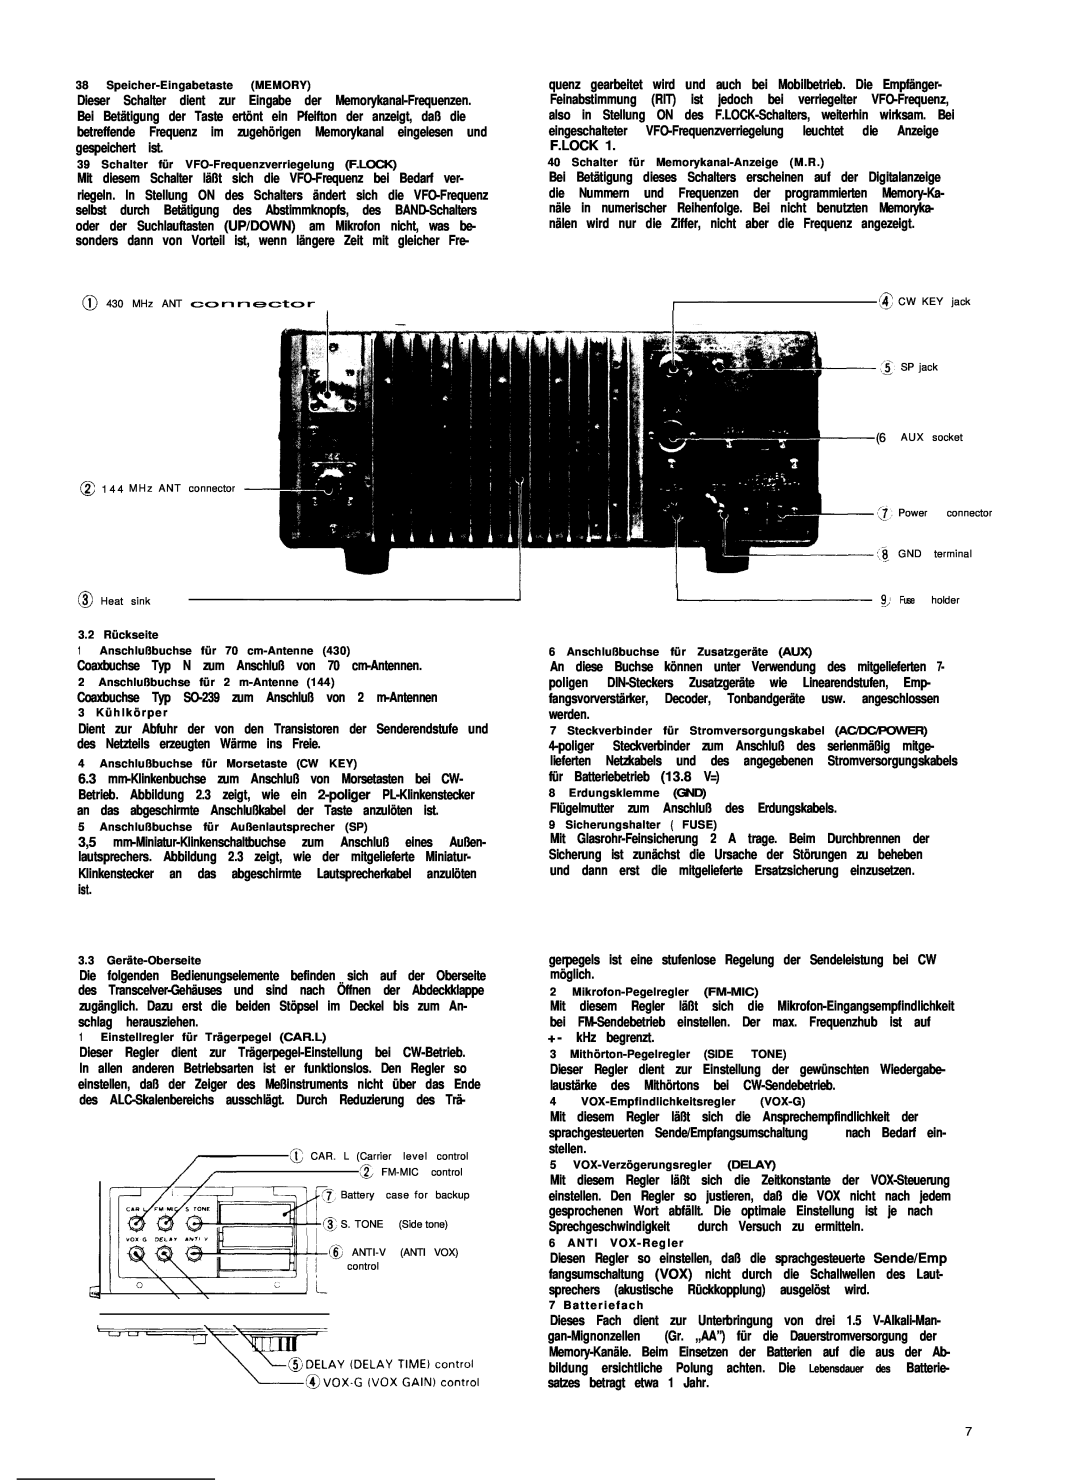 Kenwood TS-780 manual Coaxbuchse Typ N zum Anschluß von 70 cm-Antennen 